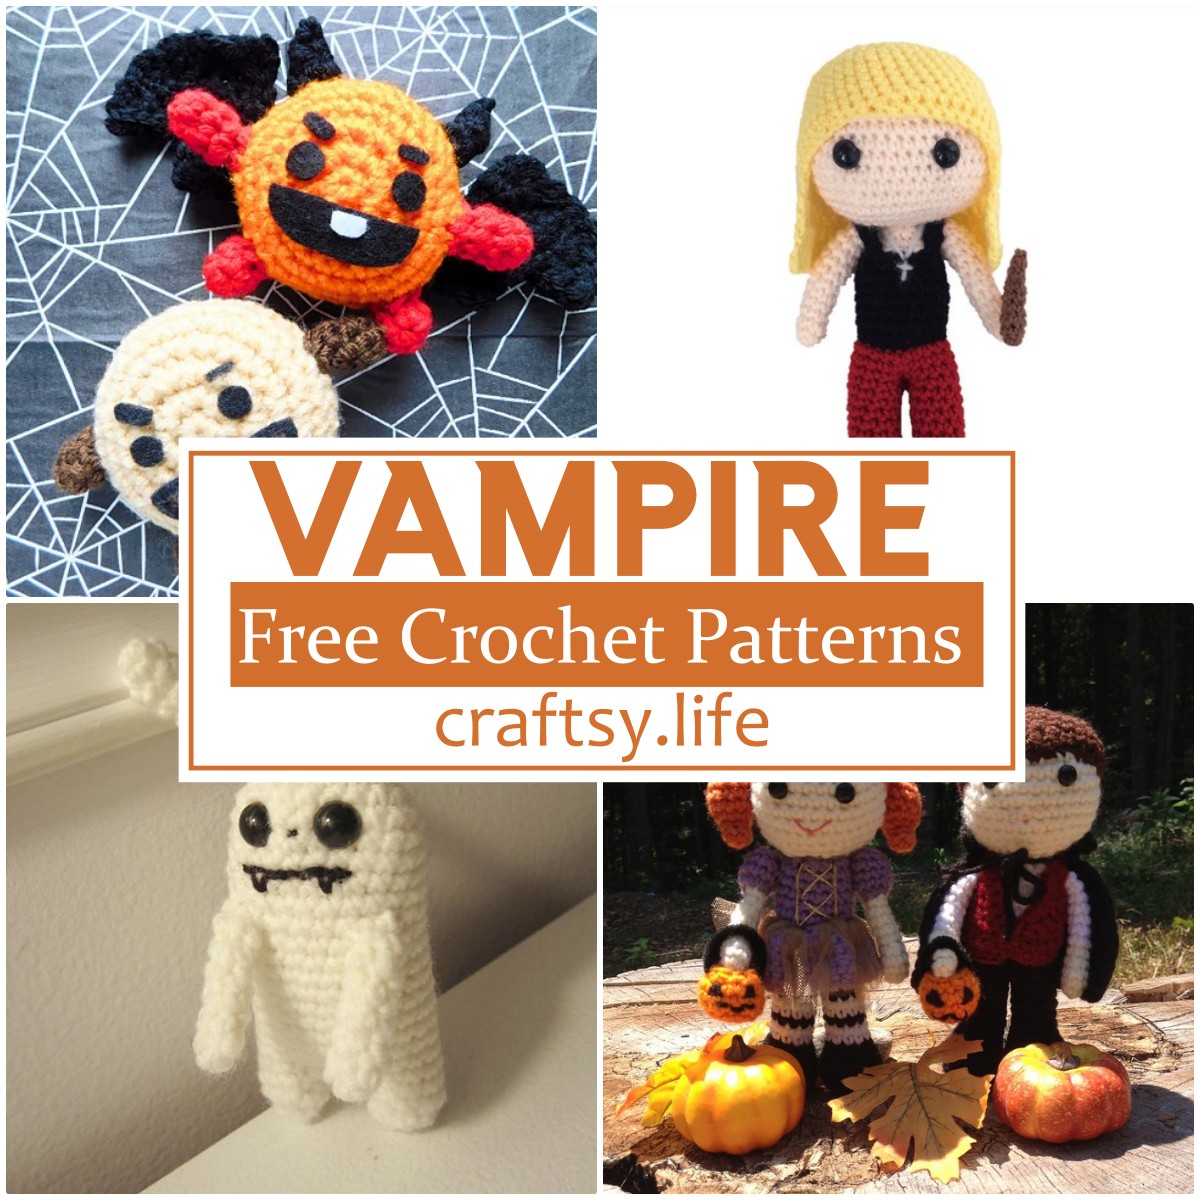 Free Crochet Vampire Patterns